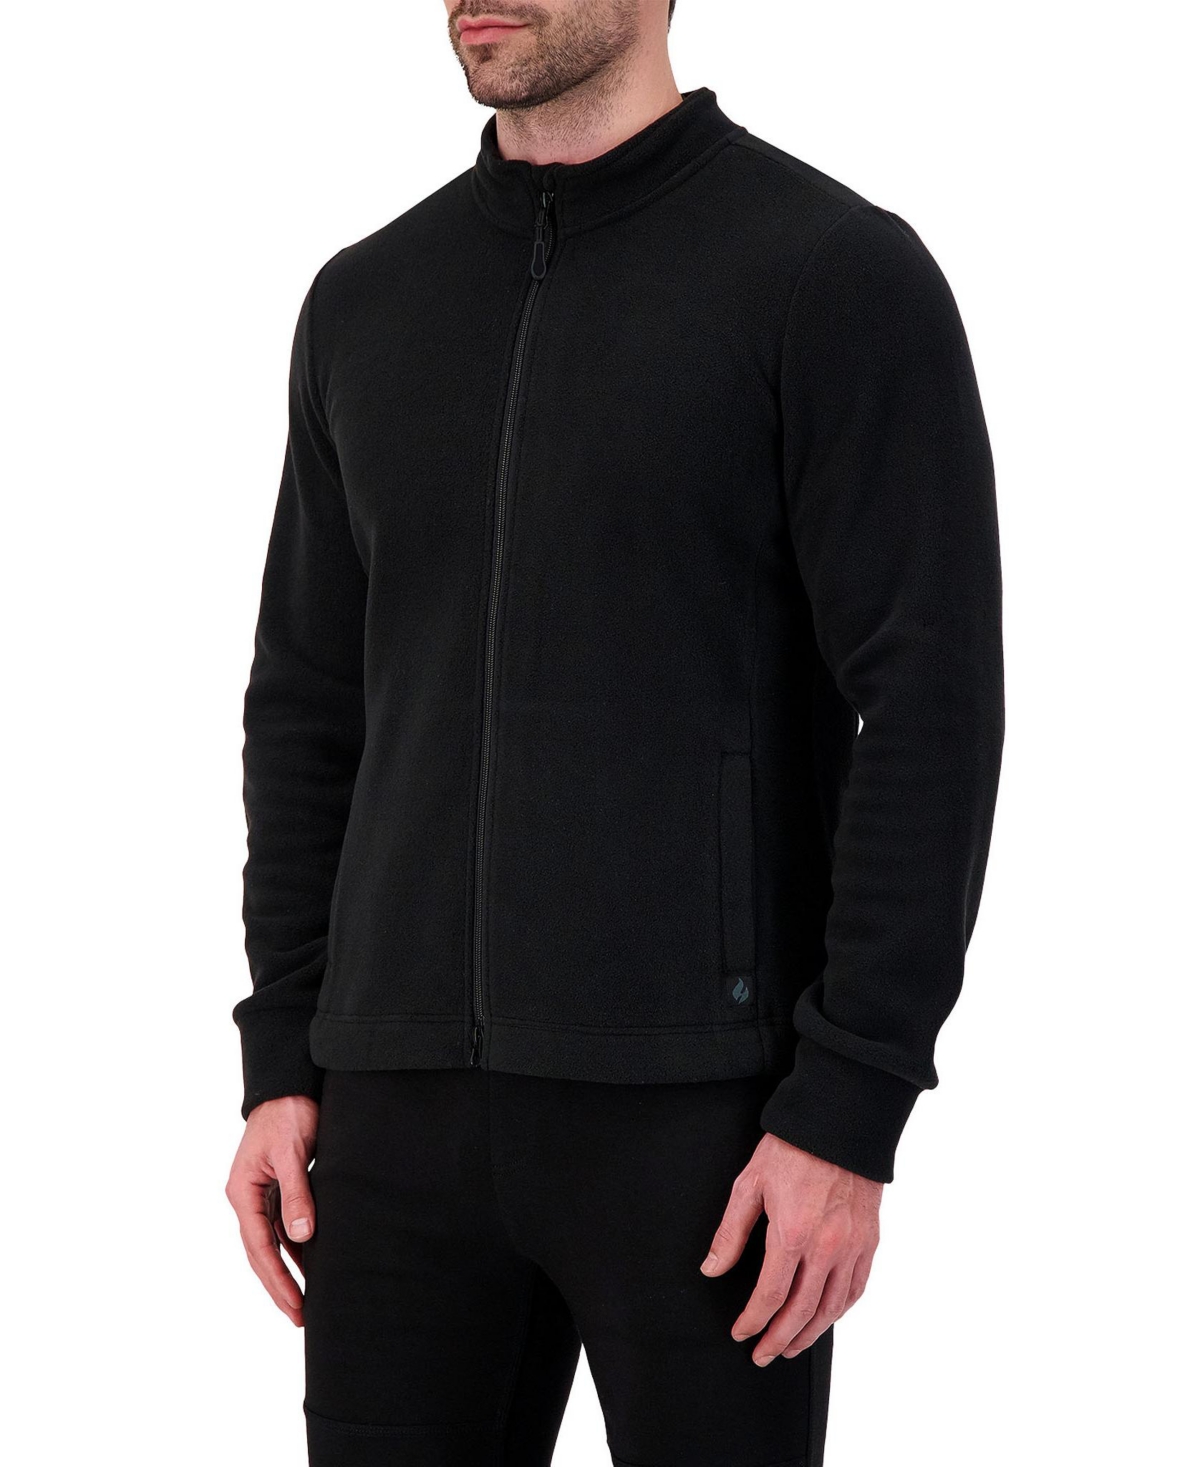 Heat Holders Men's Jackson Original Fleece Zip Jacket In Black